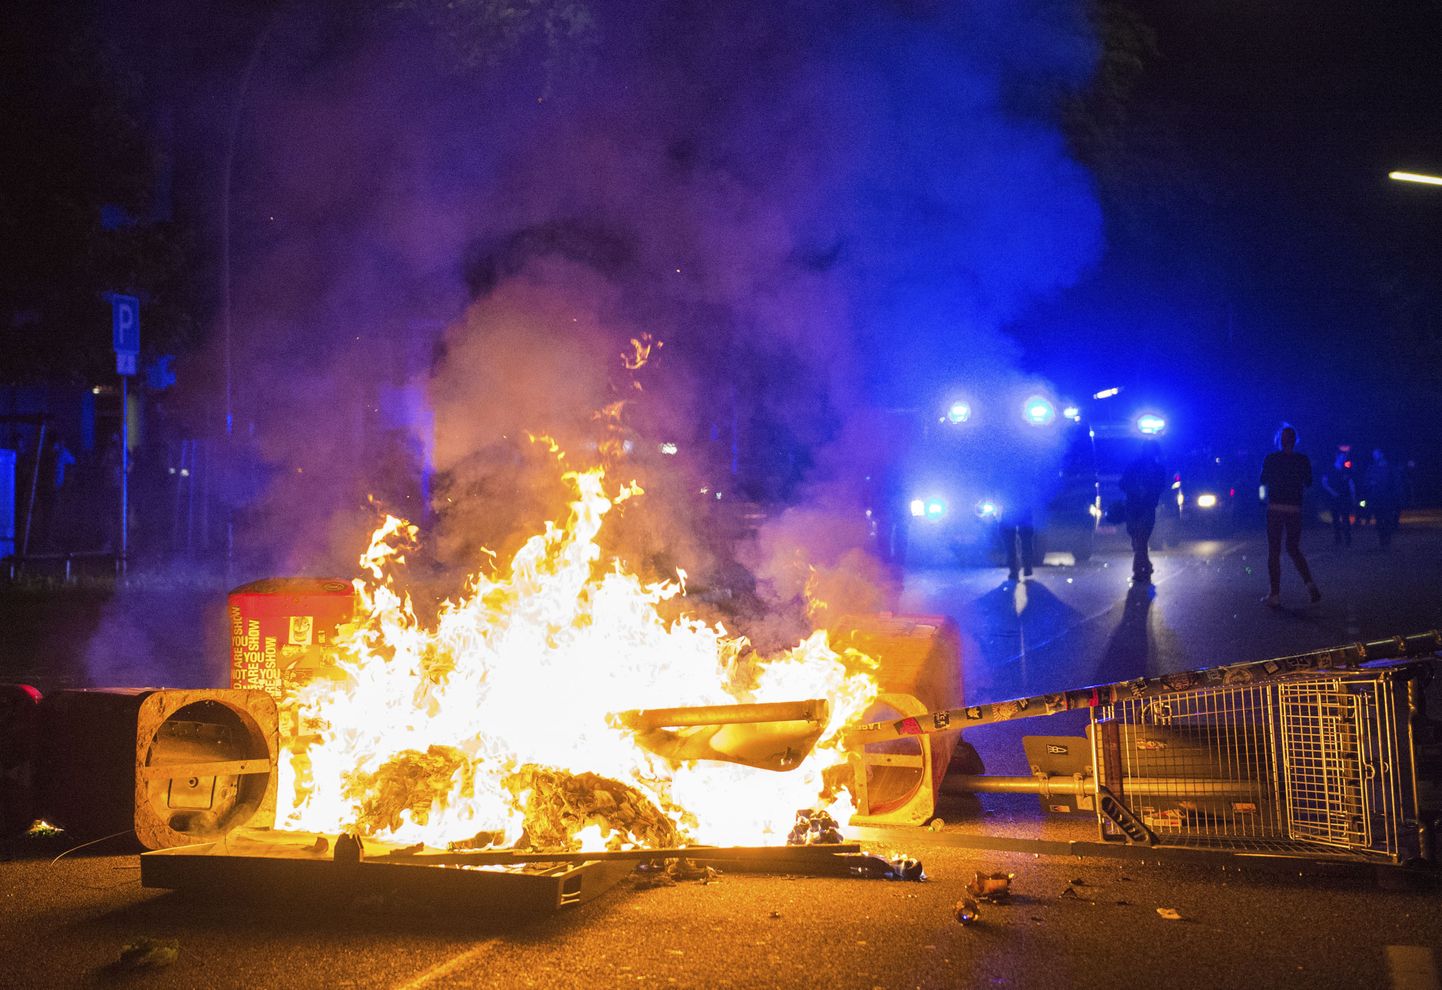 В ходе протестных акций в связи с саммитом G20, который состоялся 7-8 июля, преимущественно левые экстремисты устроили уличные бои с полицией, поджоги автомобилей, погромы и грабежи магазинов в районах рядом с местом проведения саммита.